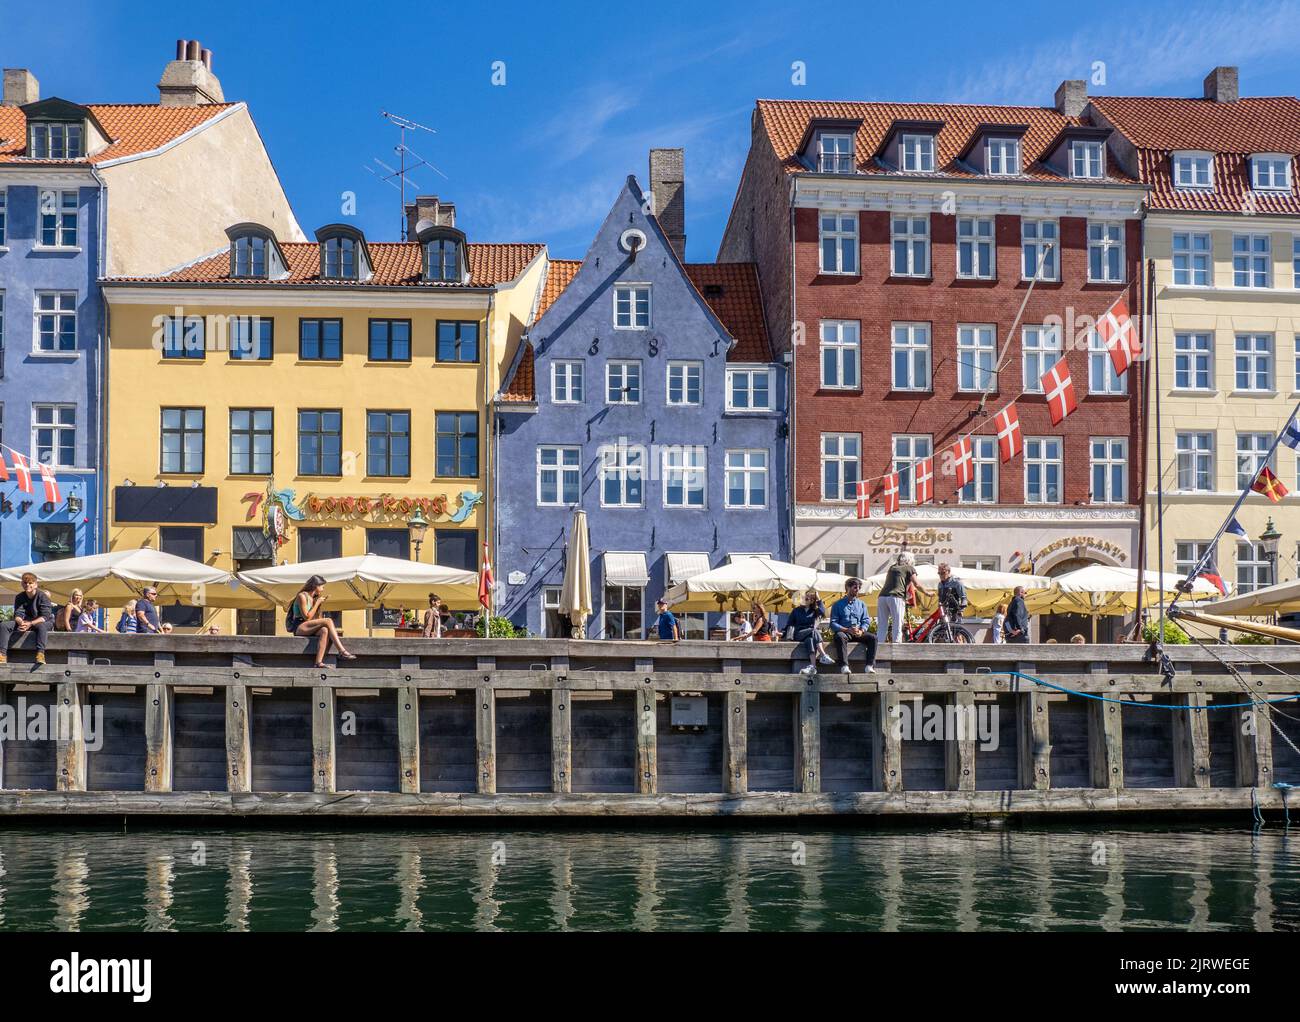 Entspannen in der Sonne am beliebten Touristenziel Nyhavn ein Kanal mit bunten 17. C Häuser Cafés und Bars gesäumt - Kopenhagen Dänemark Stockfoto